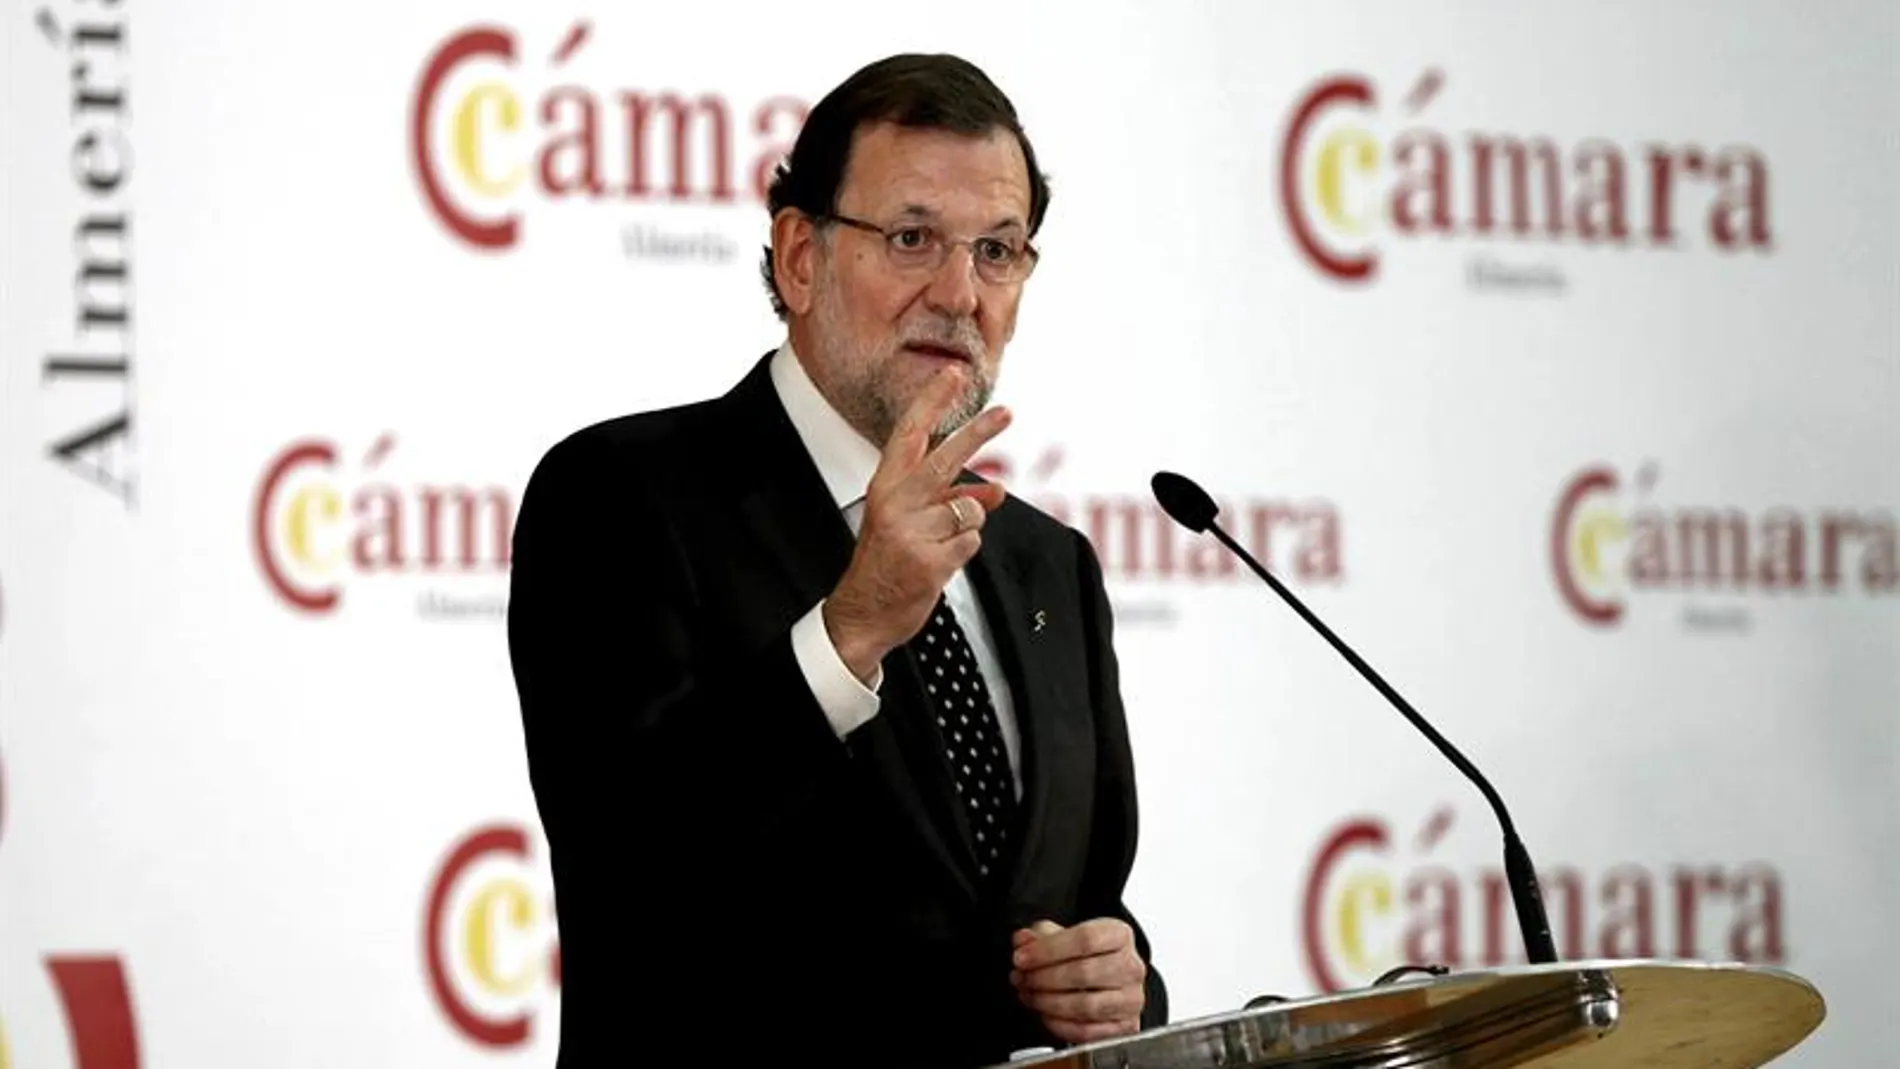 Mariano Rajoy, en su conferencia en Almería